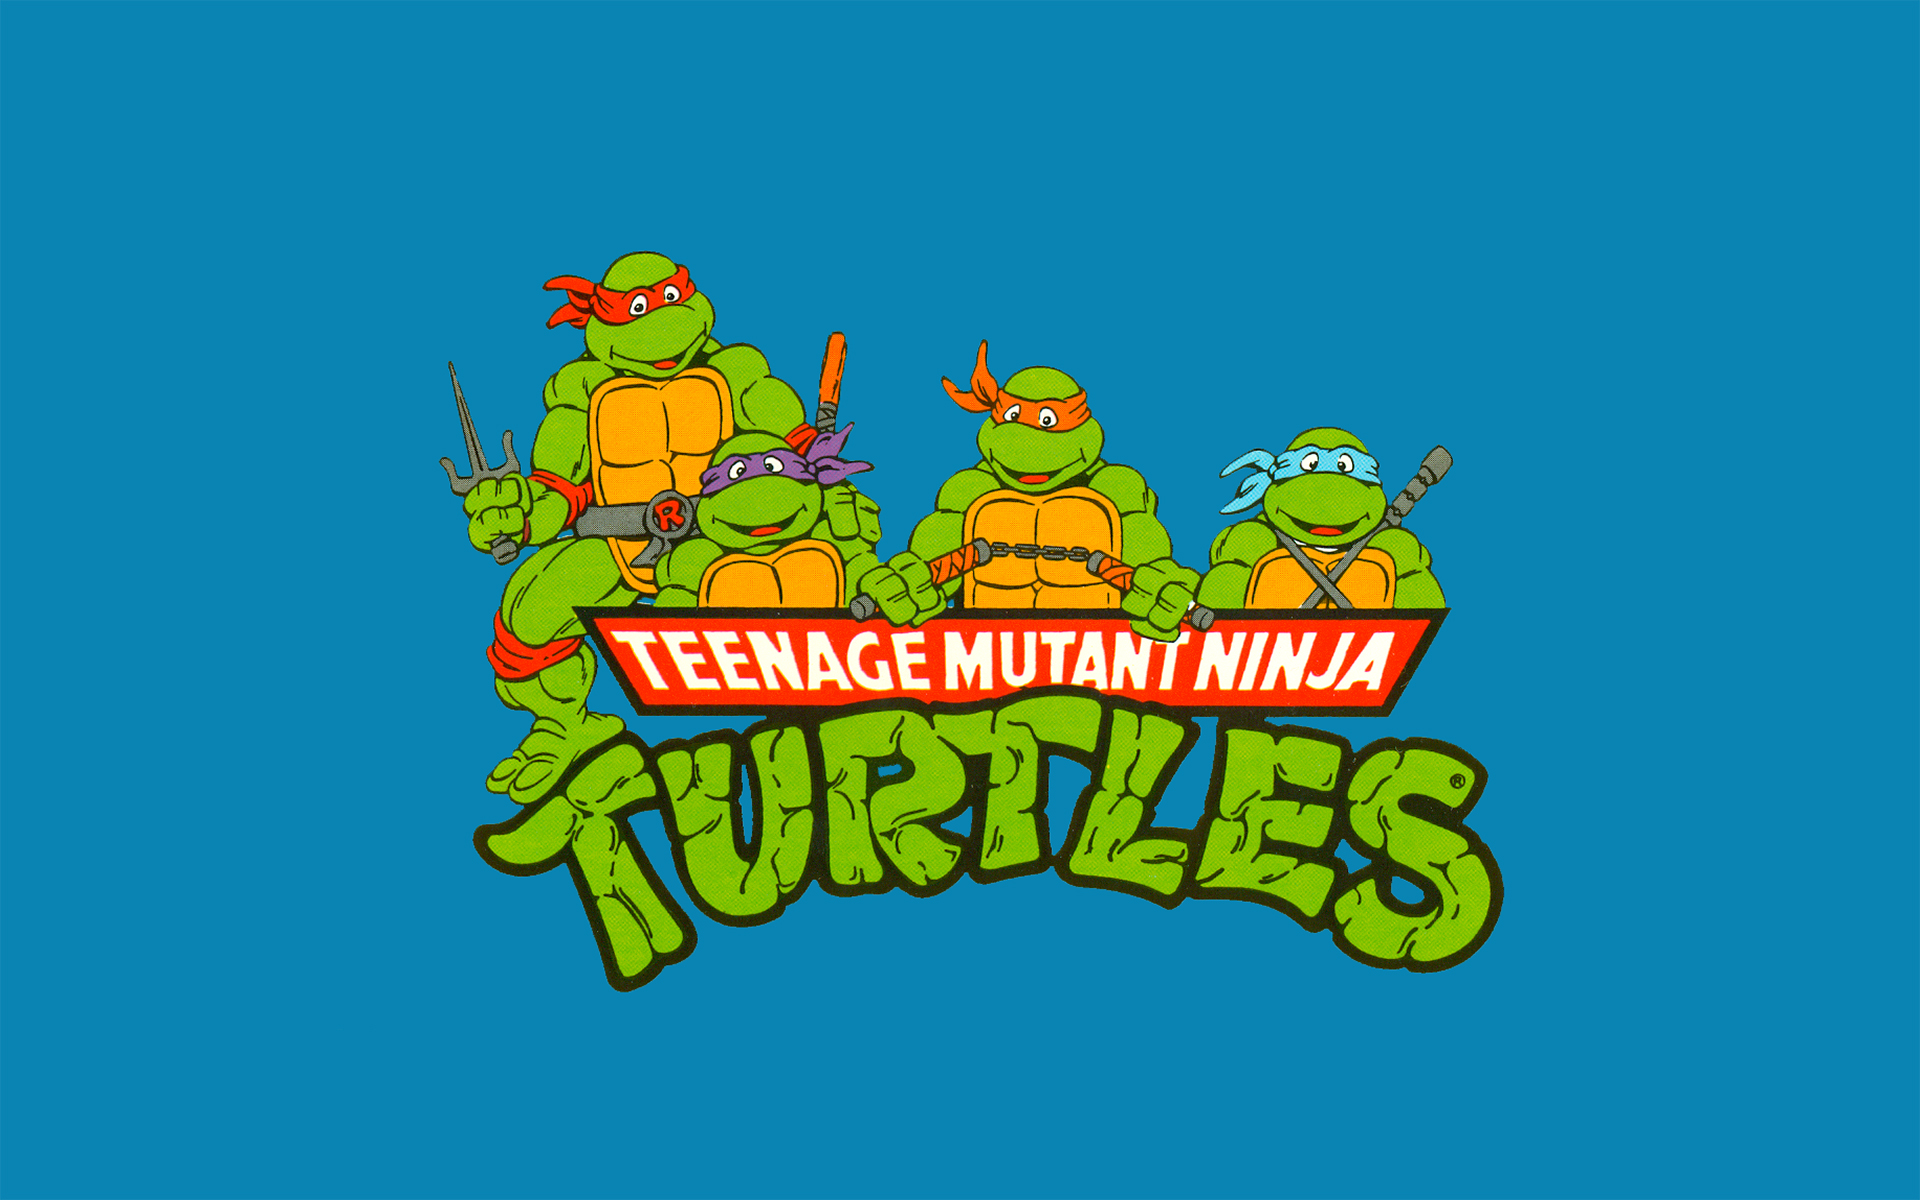 tv show, teenage mutant ninja turtles, donatello (tmnt), leonardo (tmnt), michelangelo (tmnt), raphael (tmnt), tmnt